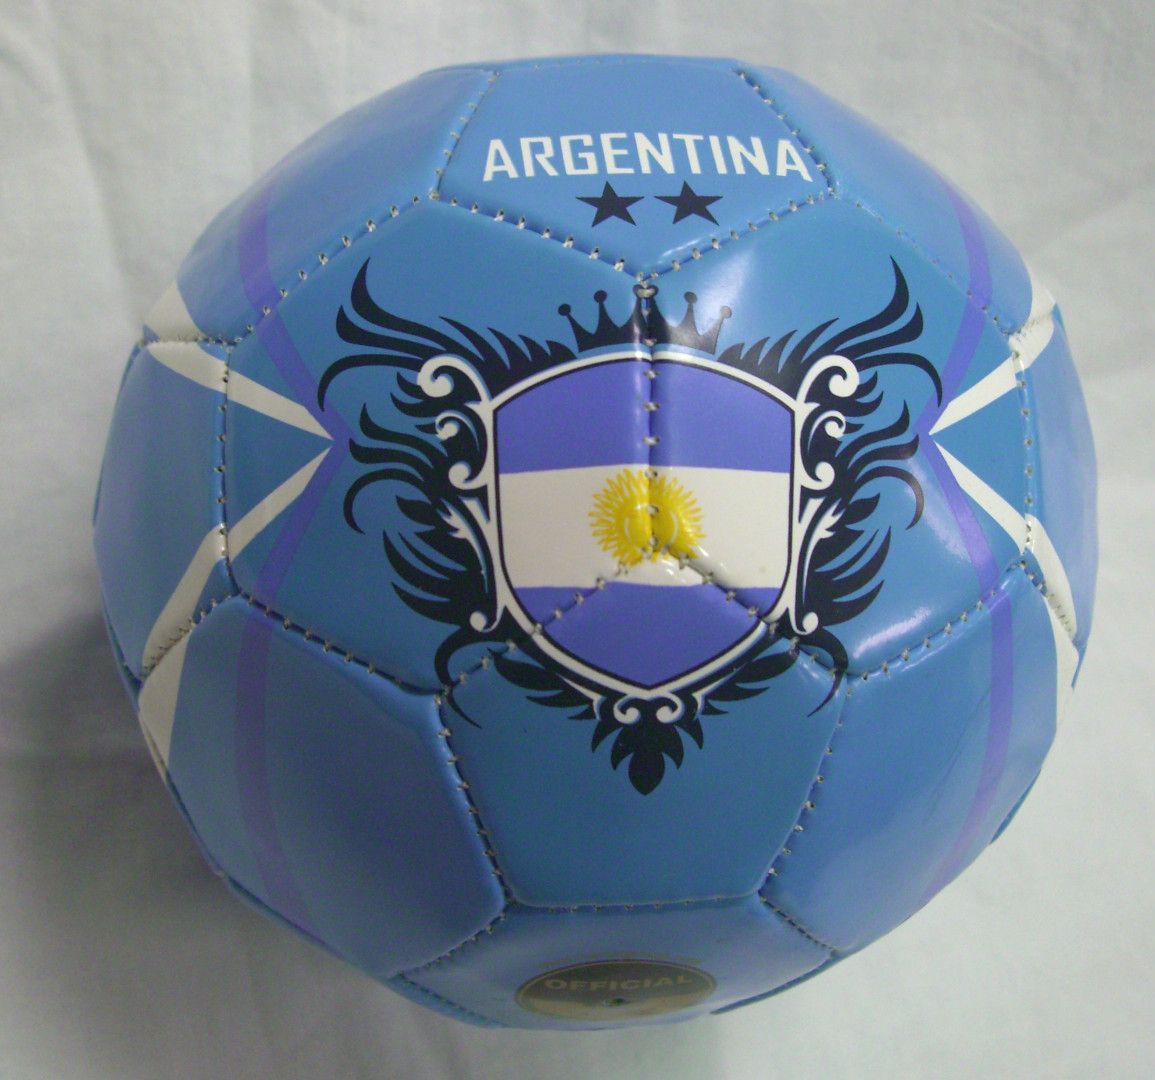 Argentina soccer ball futbol World Cup football fussball calcio size 2 